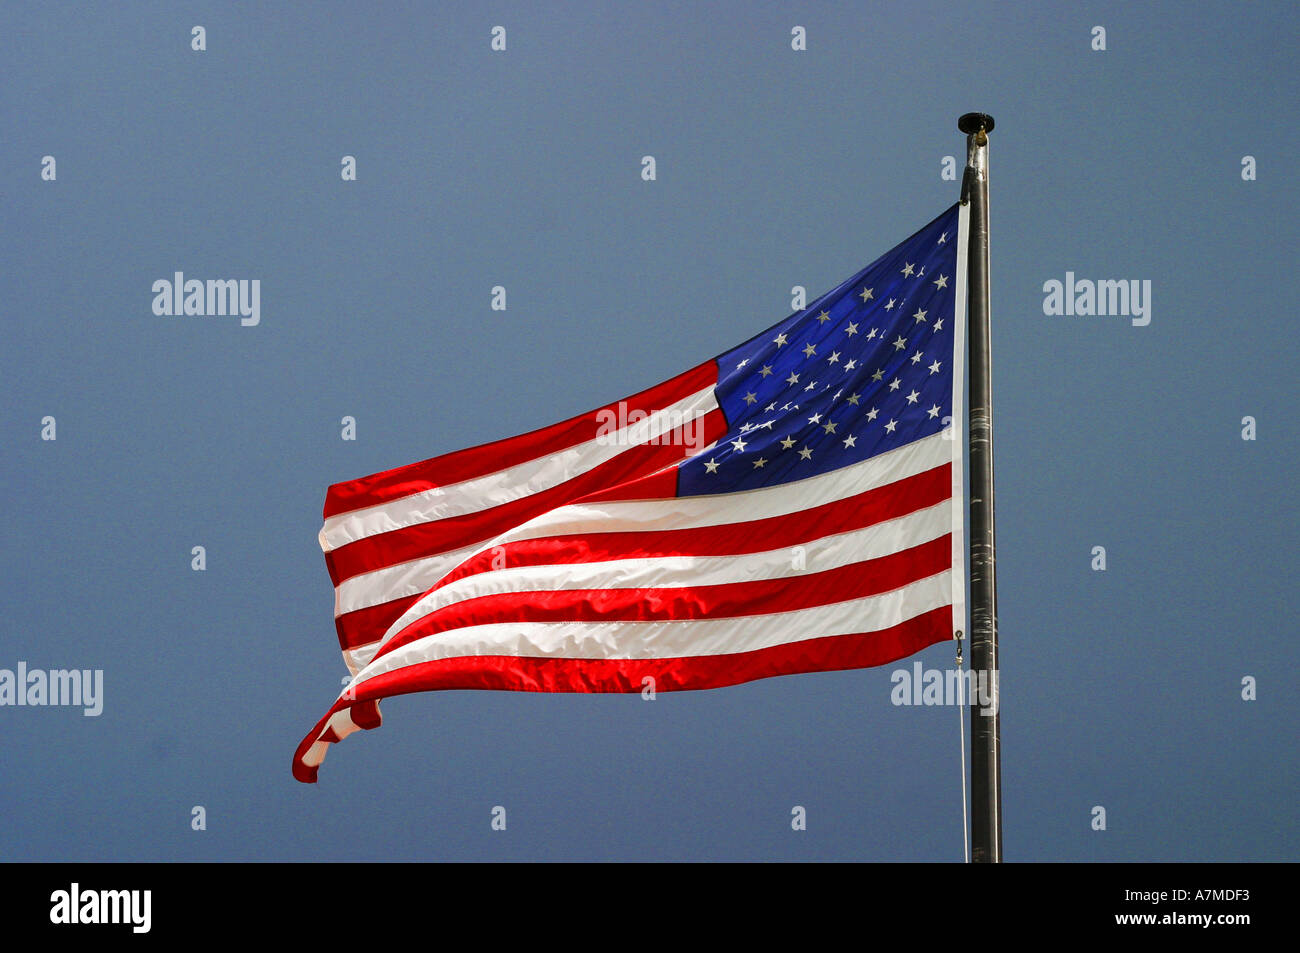 Estados Unidos de América bandera europea de las barras y estrellas Foto de stock